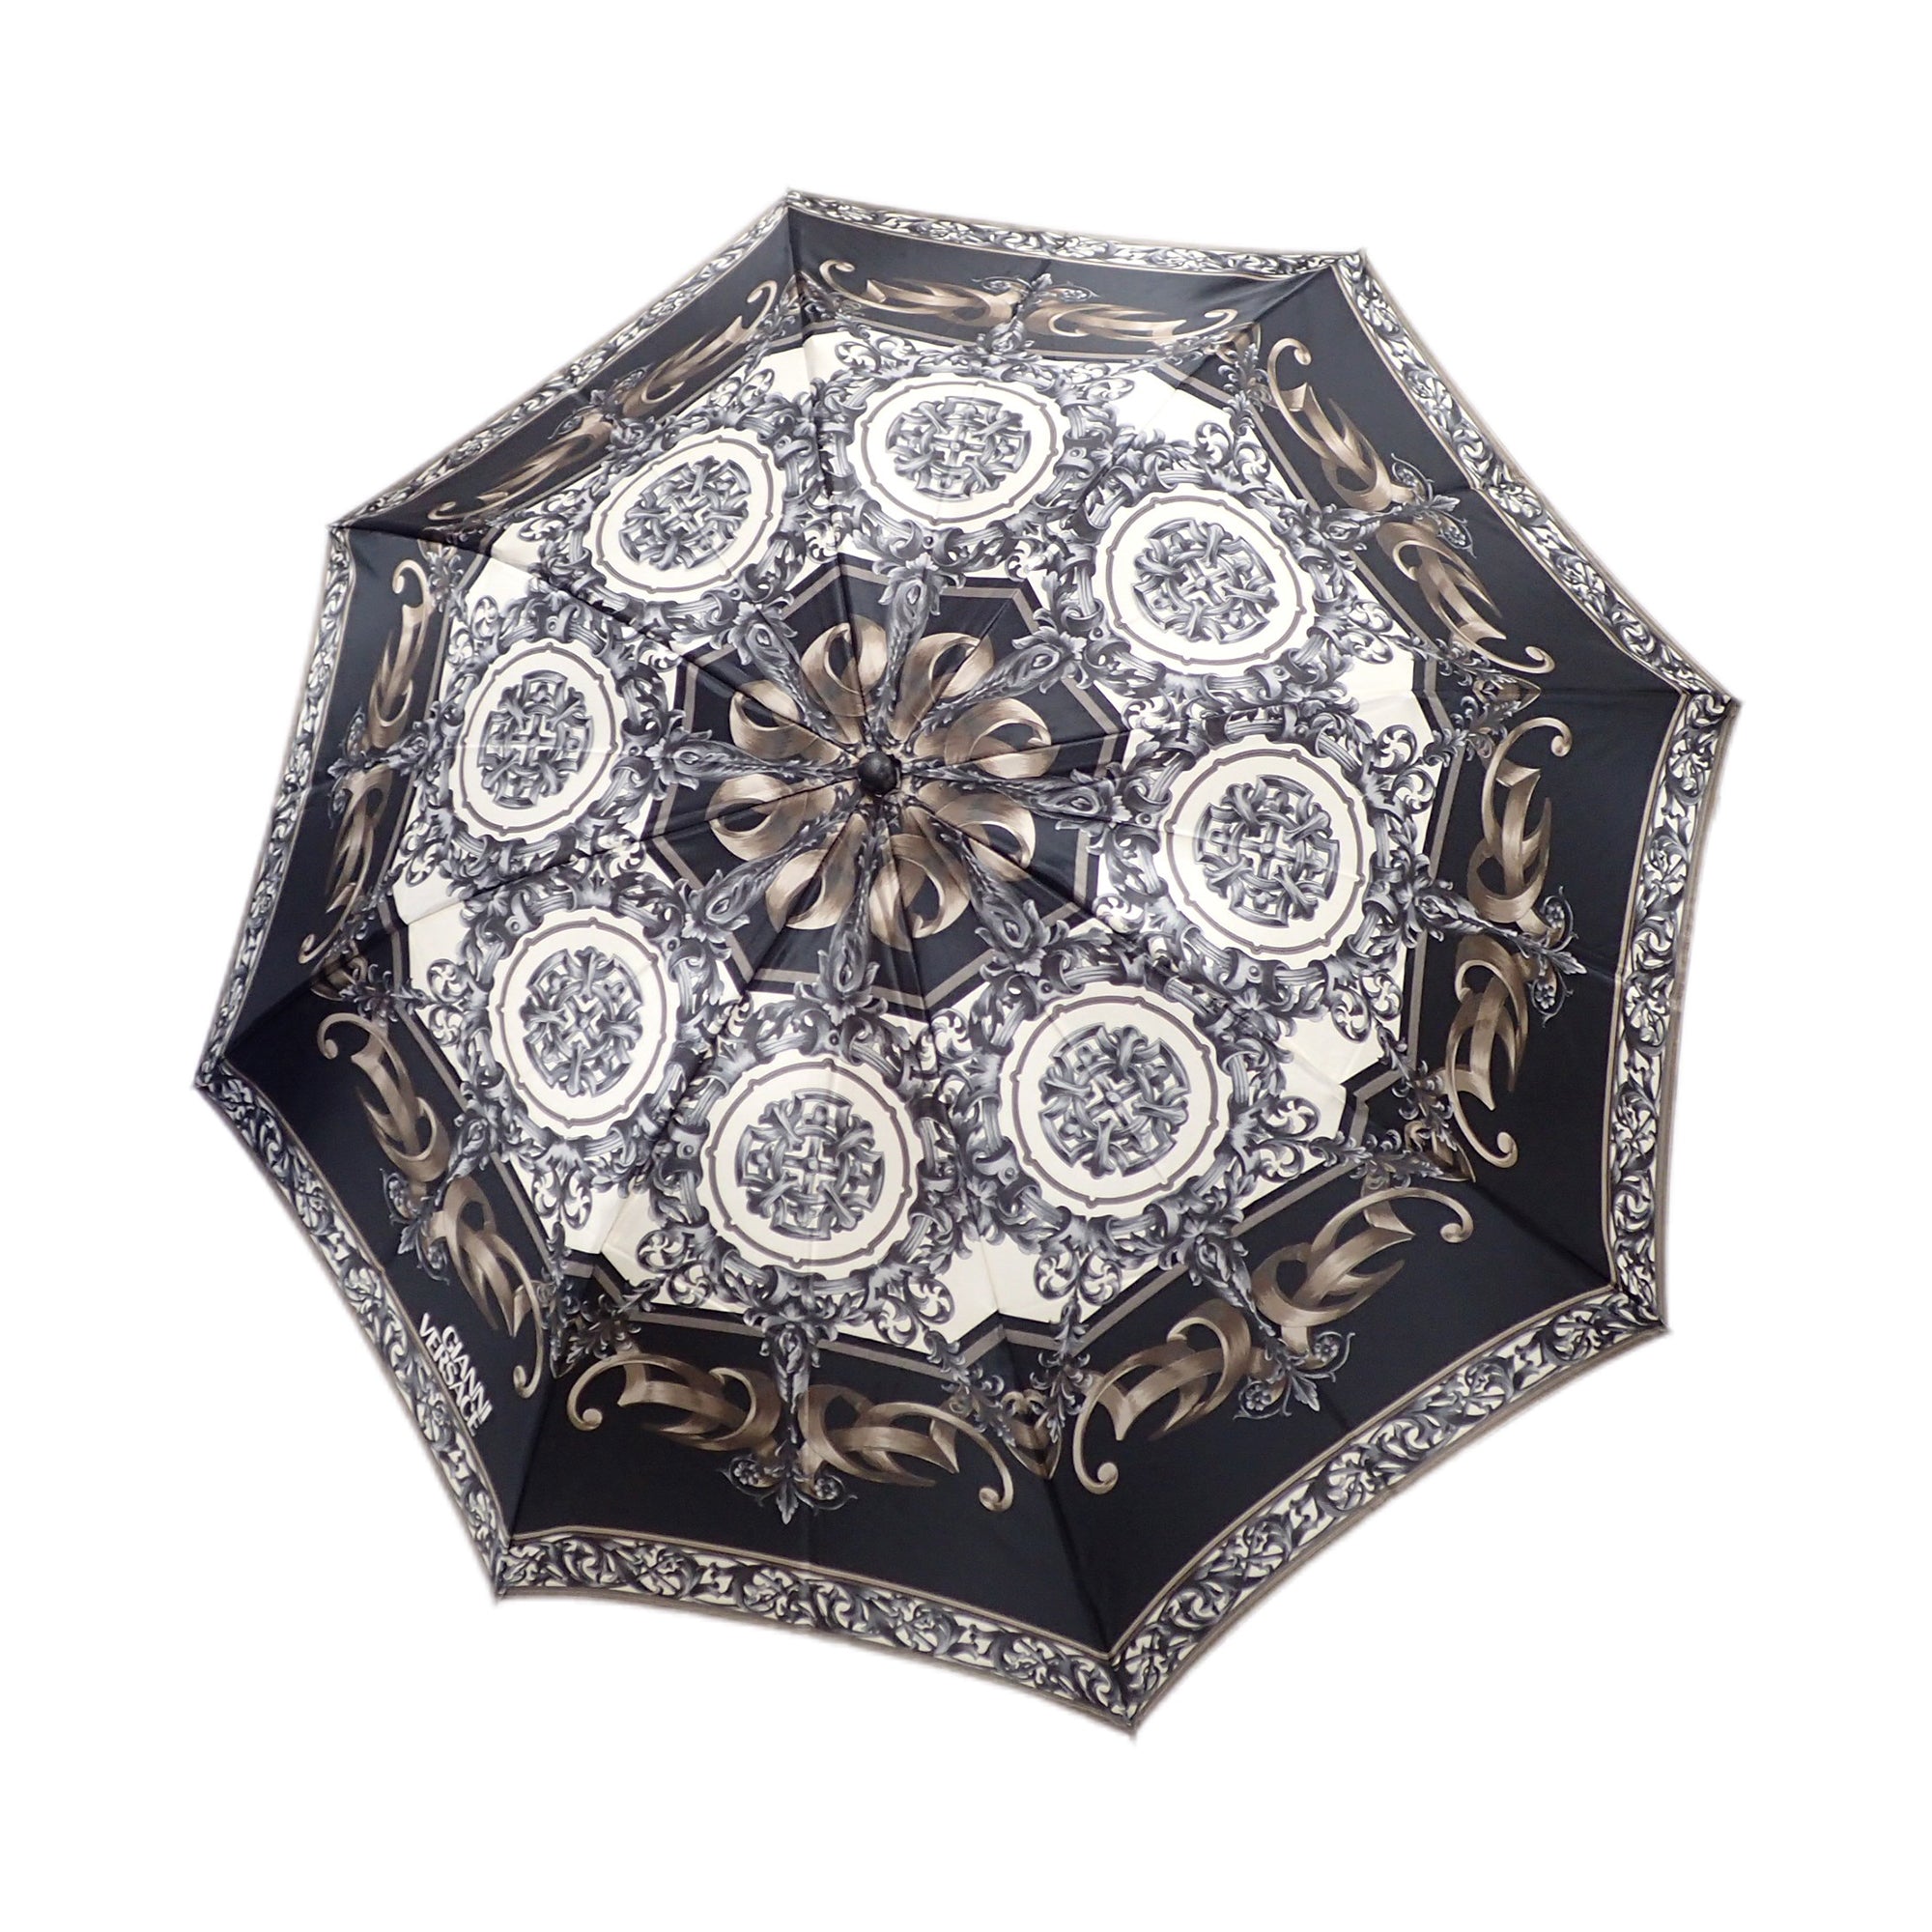 VERSACE ヴェルサーチ 折りたたみ傘